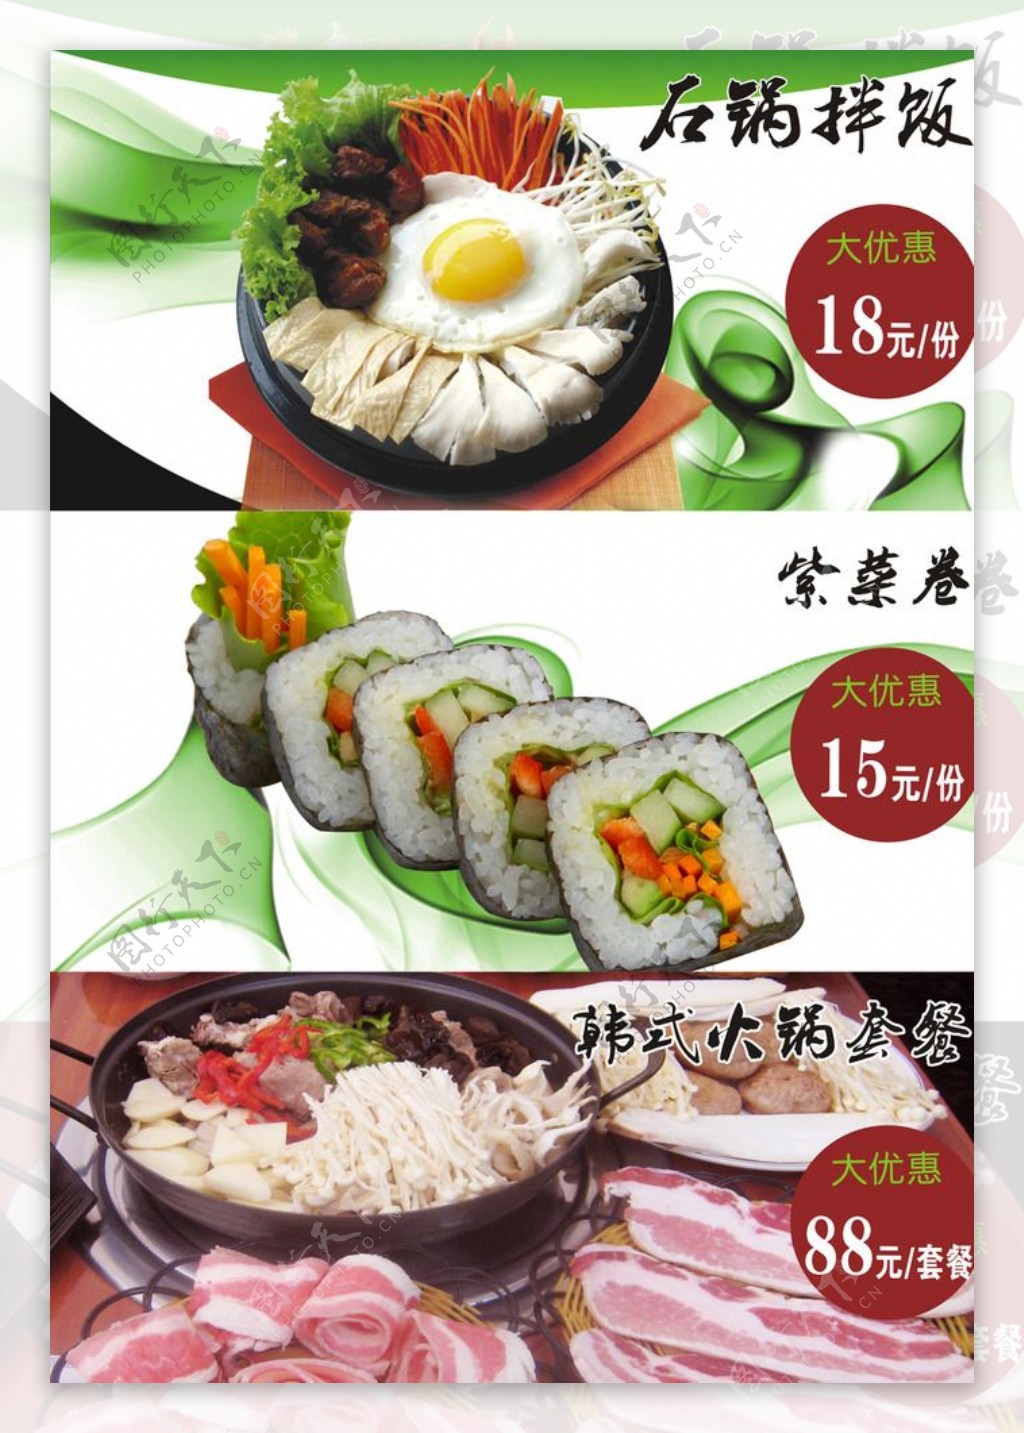 韩式火锅套餐图片